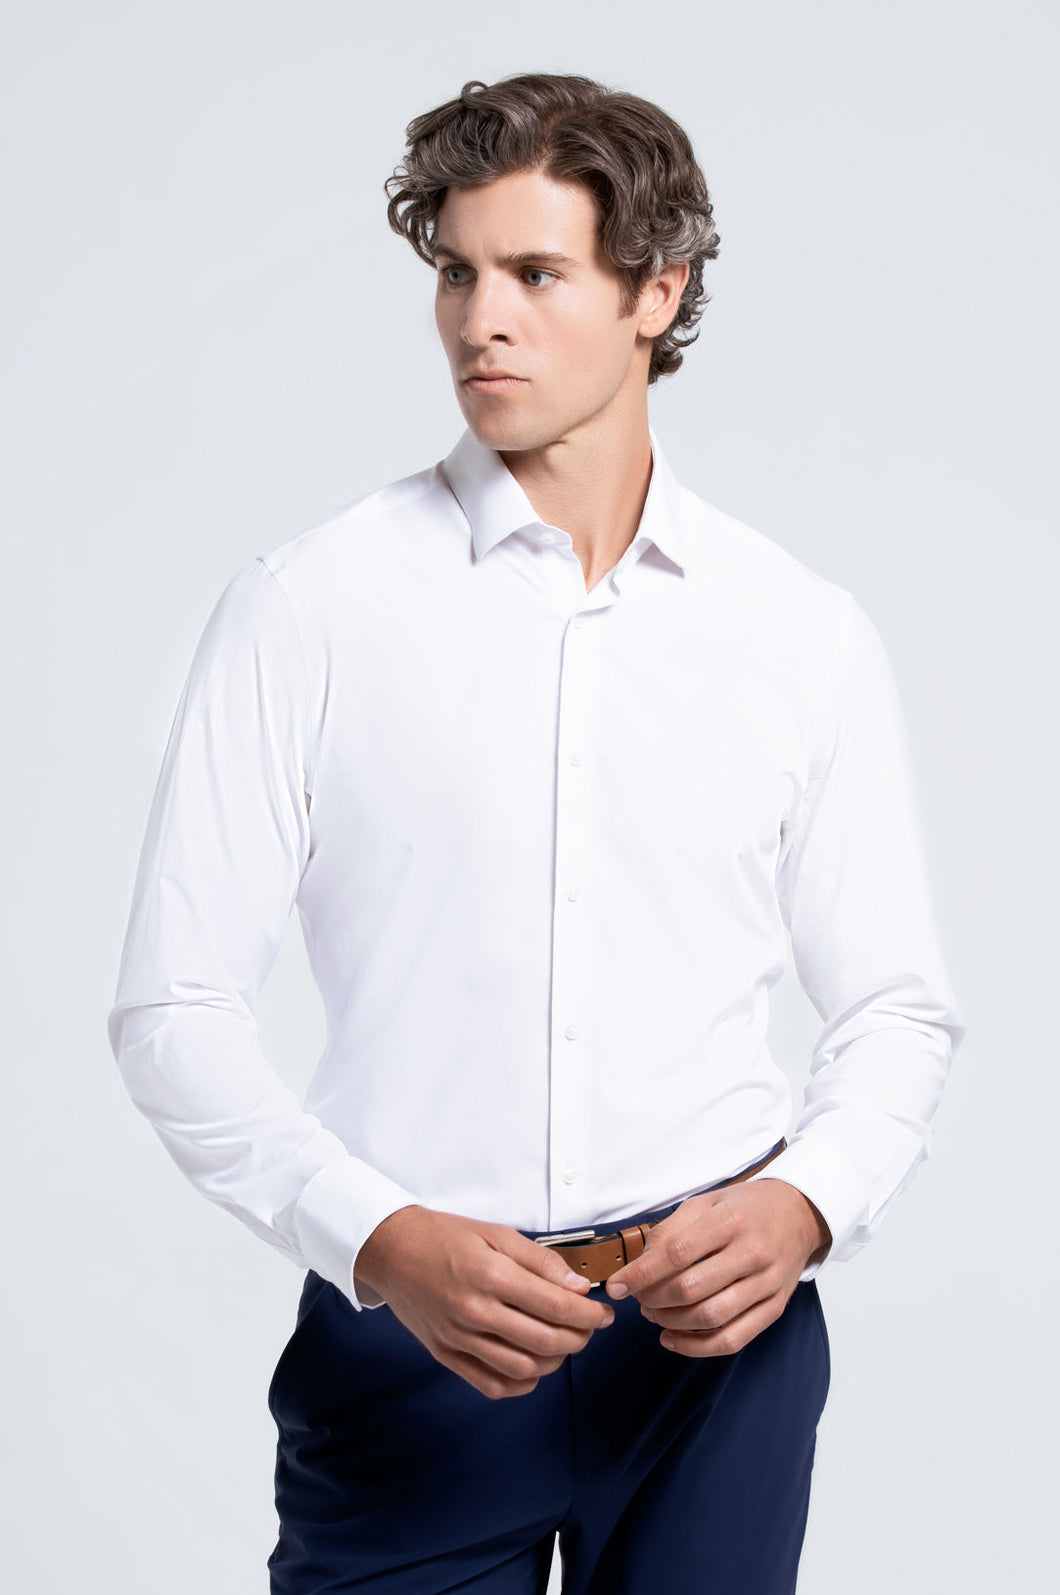 Men's White Long Sleeve Dress Shirt